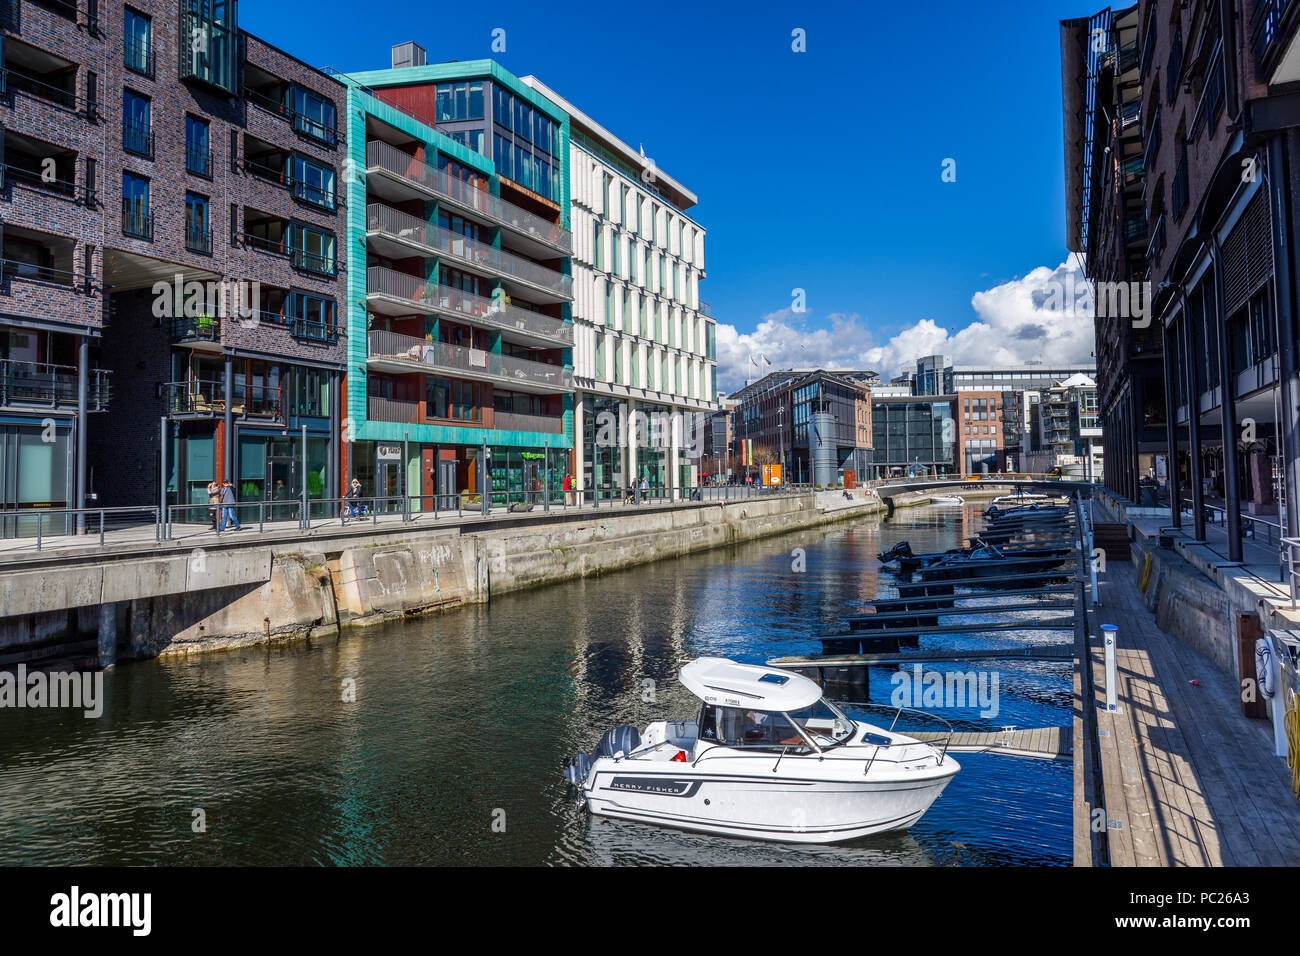 Exemple typique de l'architecture scandinave dans la région d'Aker Brygge dans Oslo, Norvège Banque D'Images